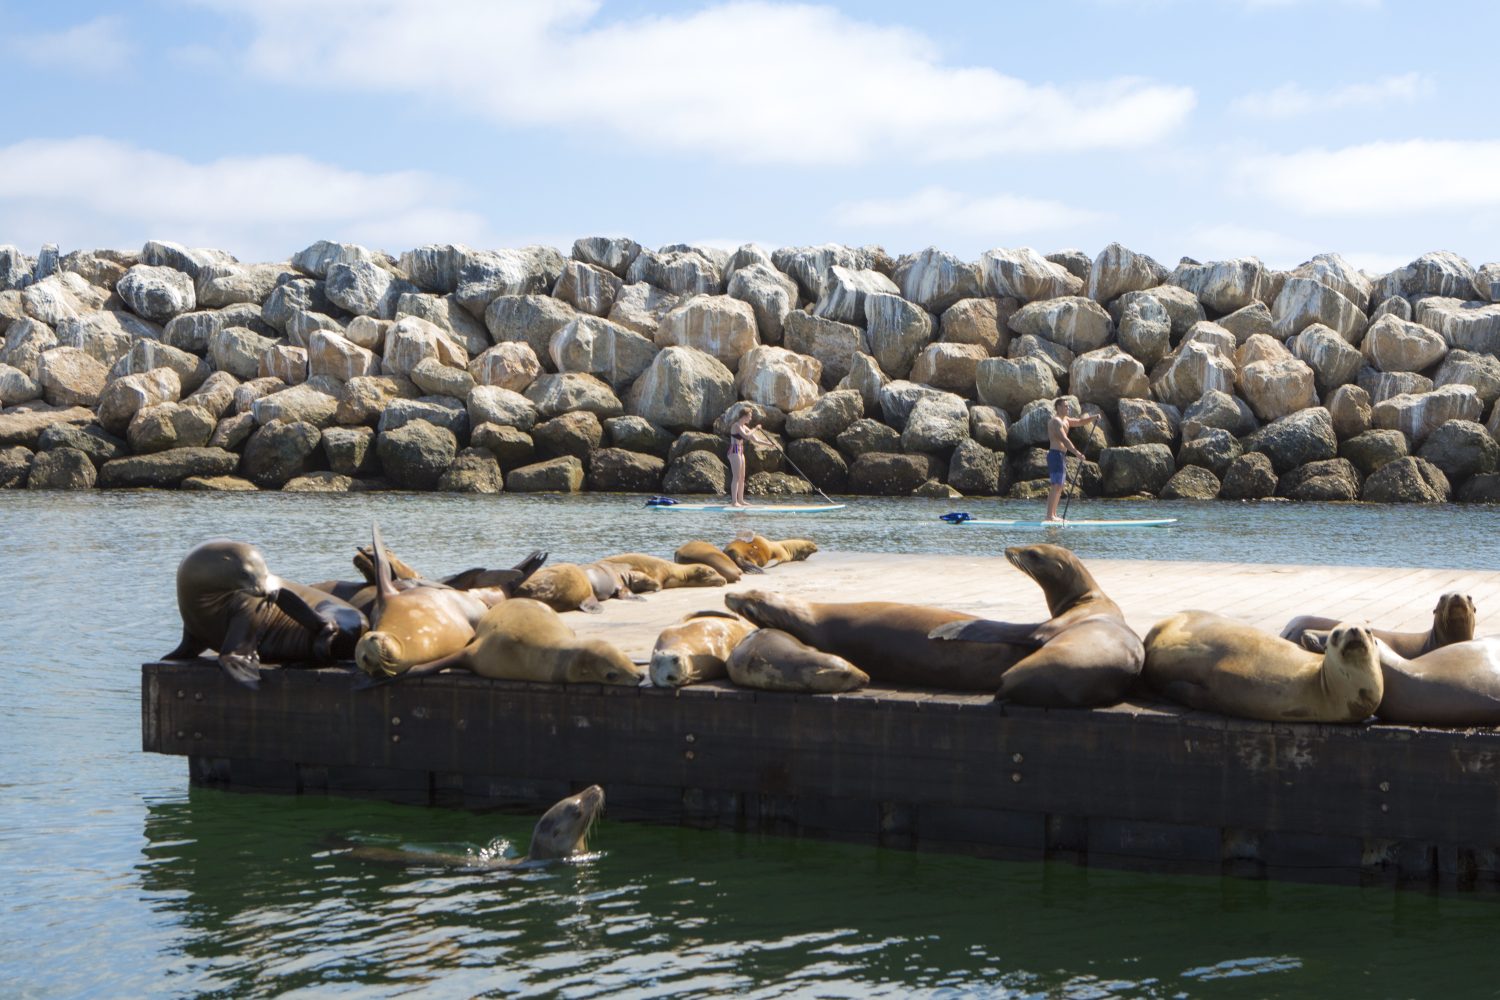 sea lions sub bahting behind paddle boarders. ocean views la